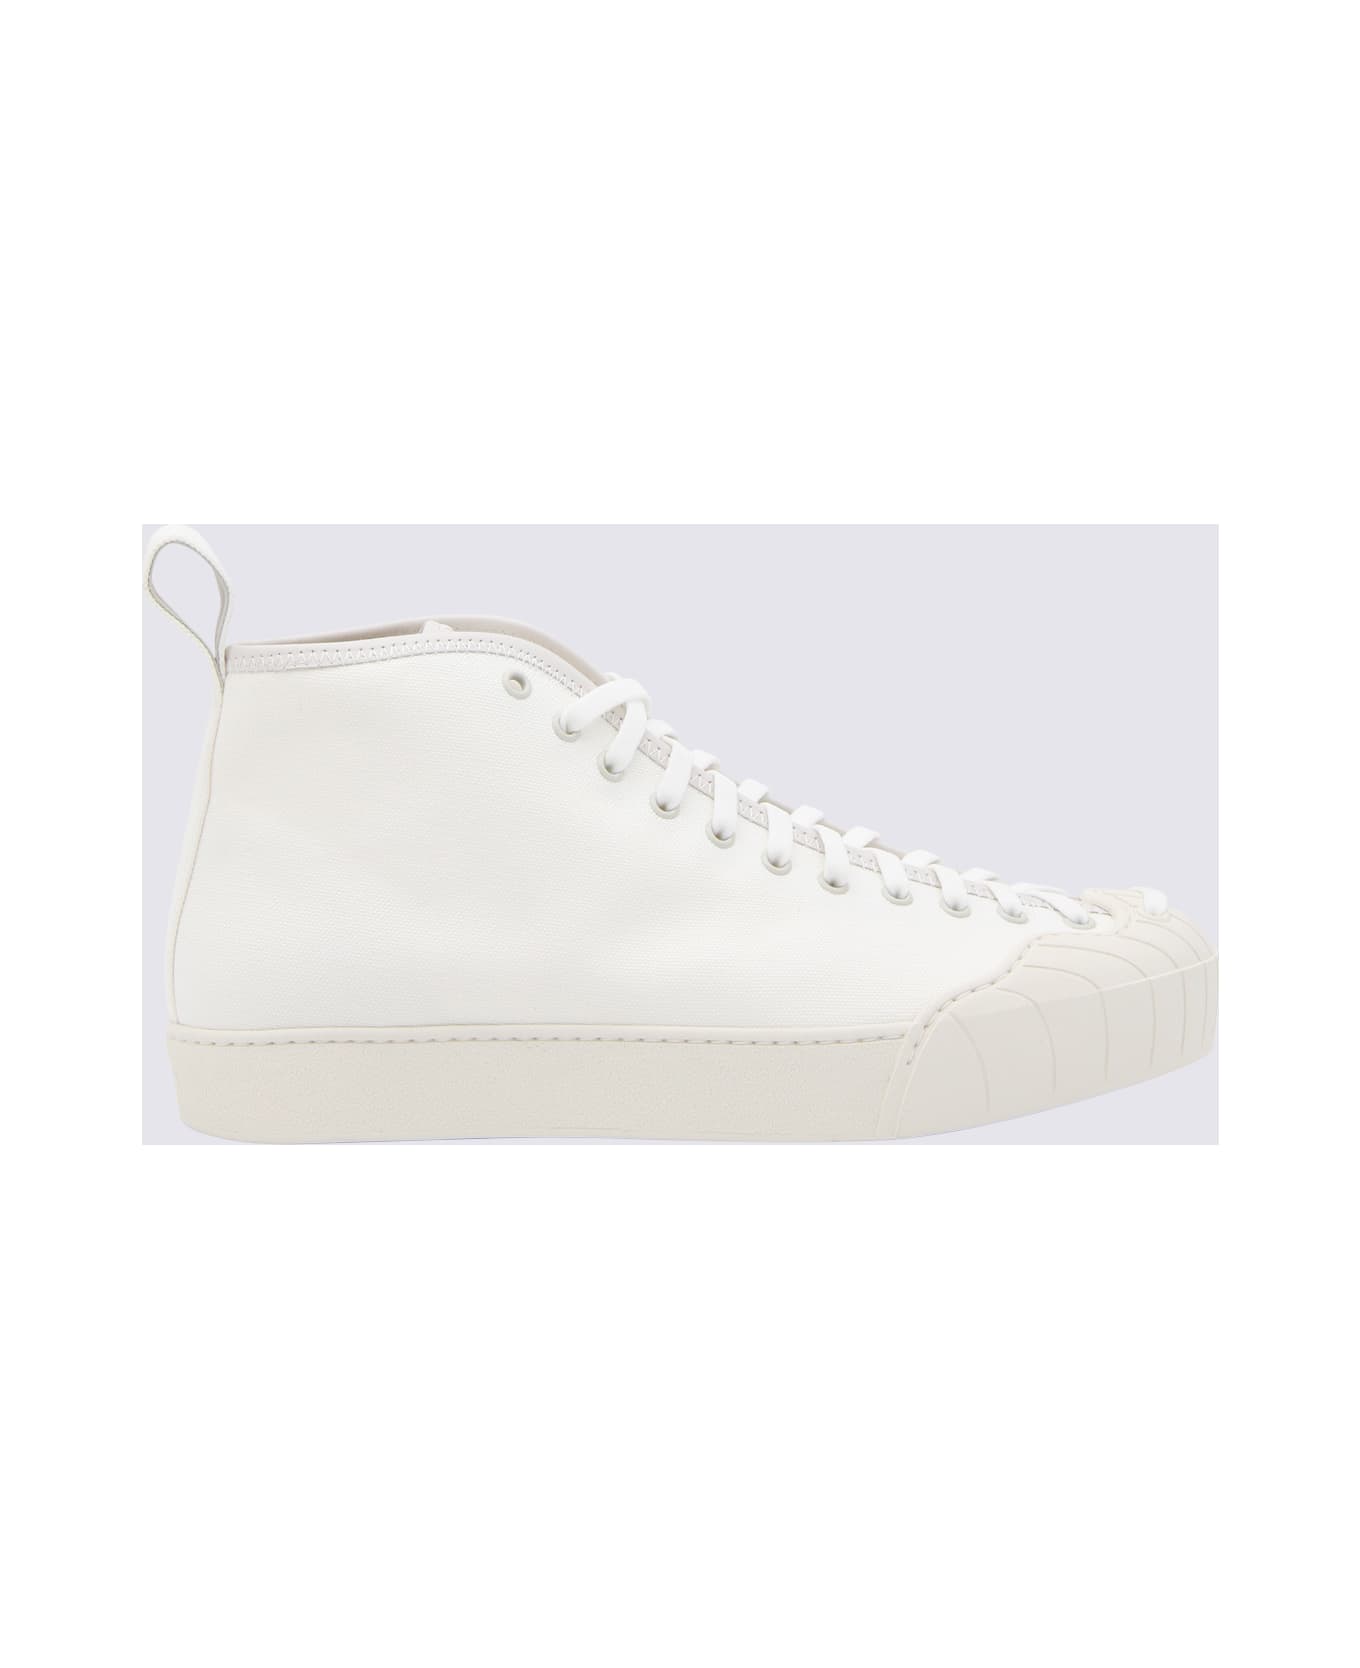 Sunnei White Isi Sneakers - White